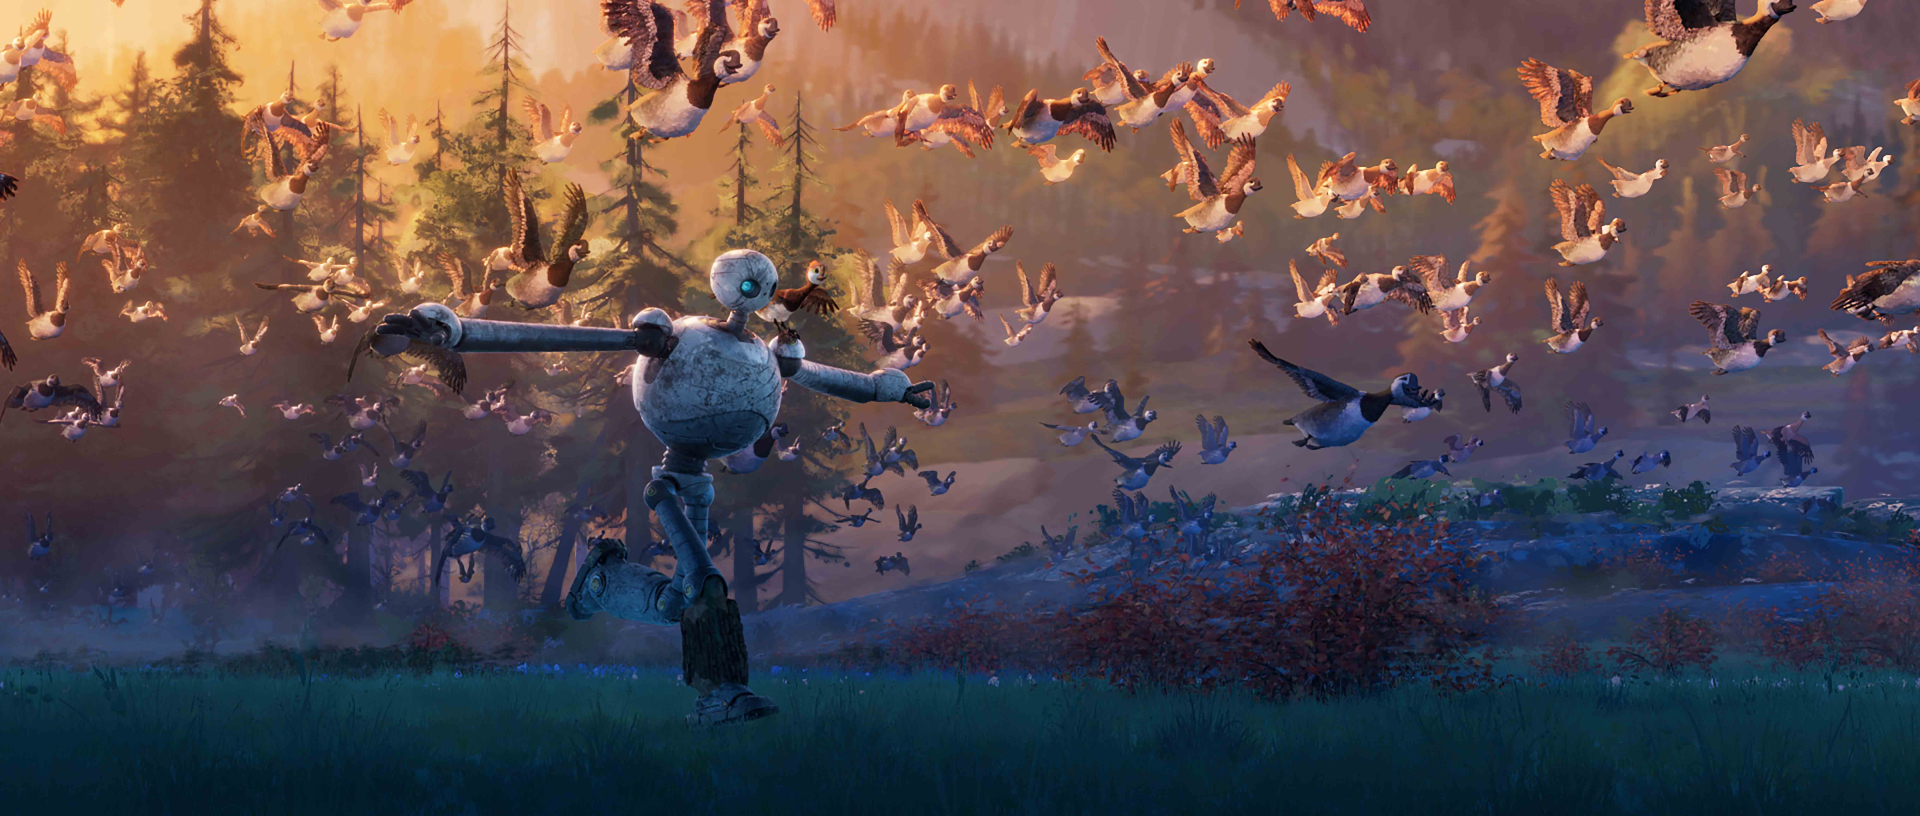 The Wild Robot - Bom tấn hoạt hình tháng 10 nhà DreamWorks nhá hàng trailer mới đầy cảm xúc - ảnh 4